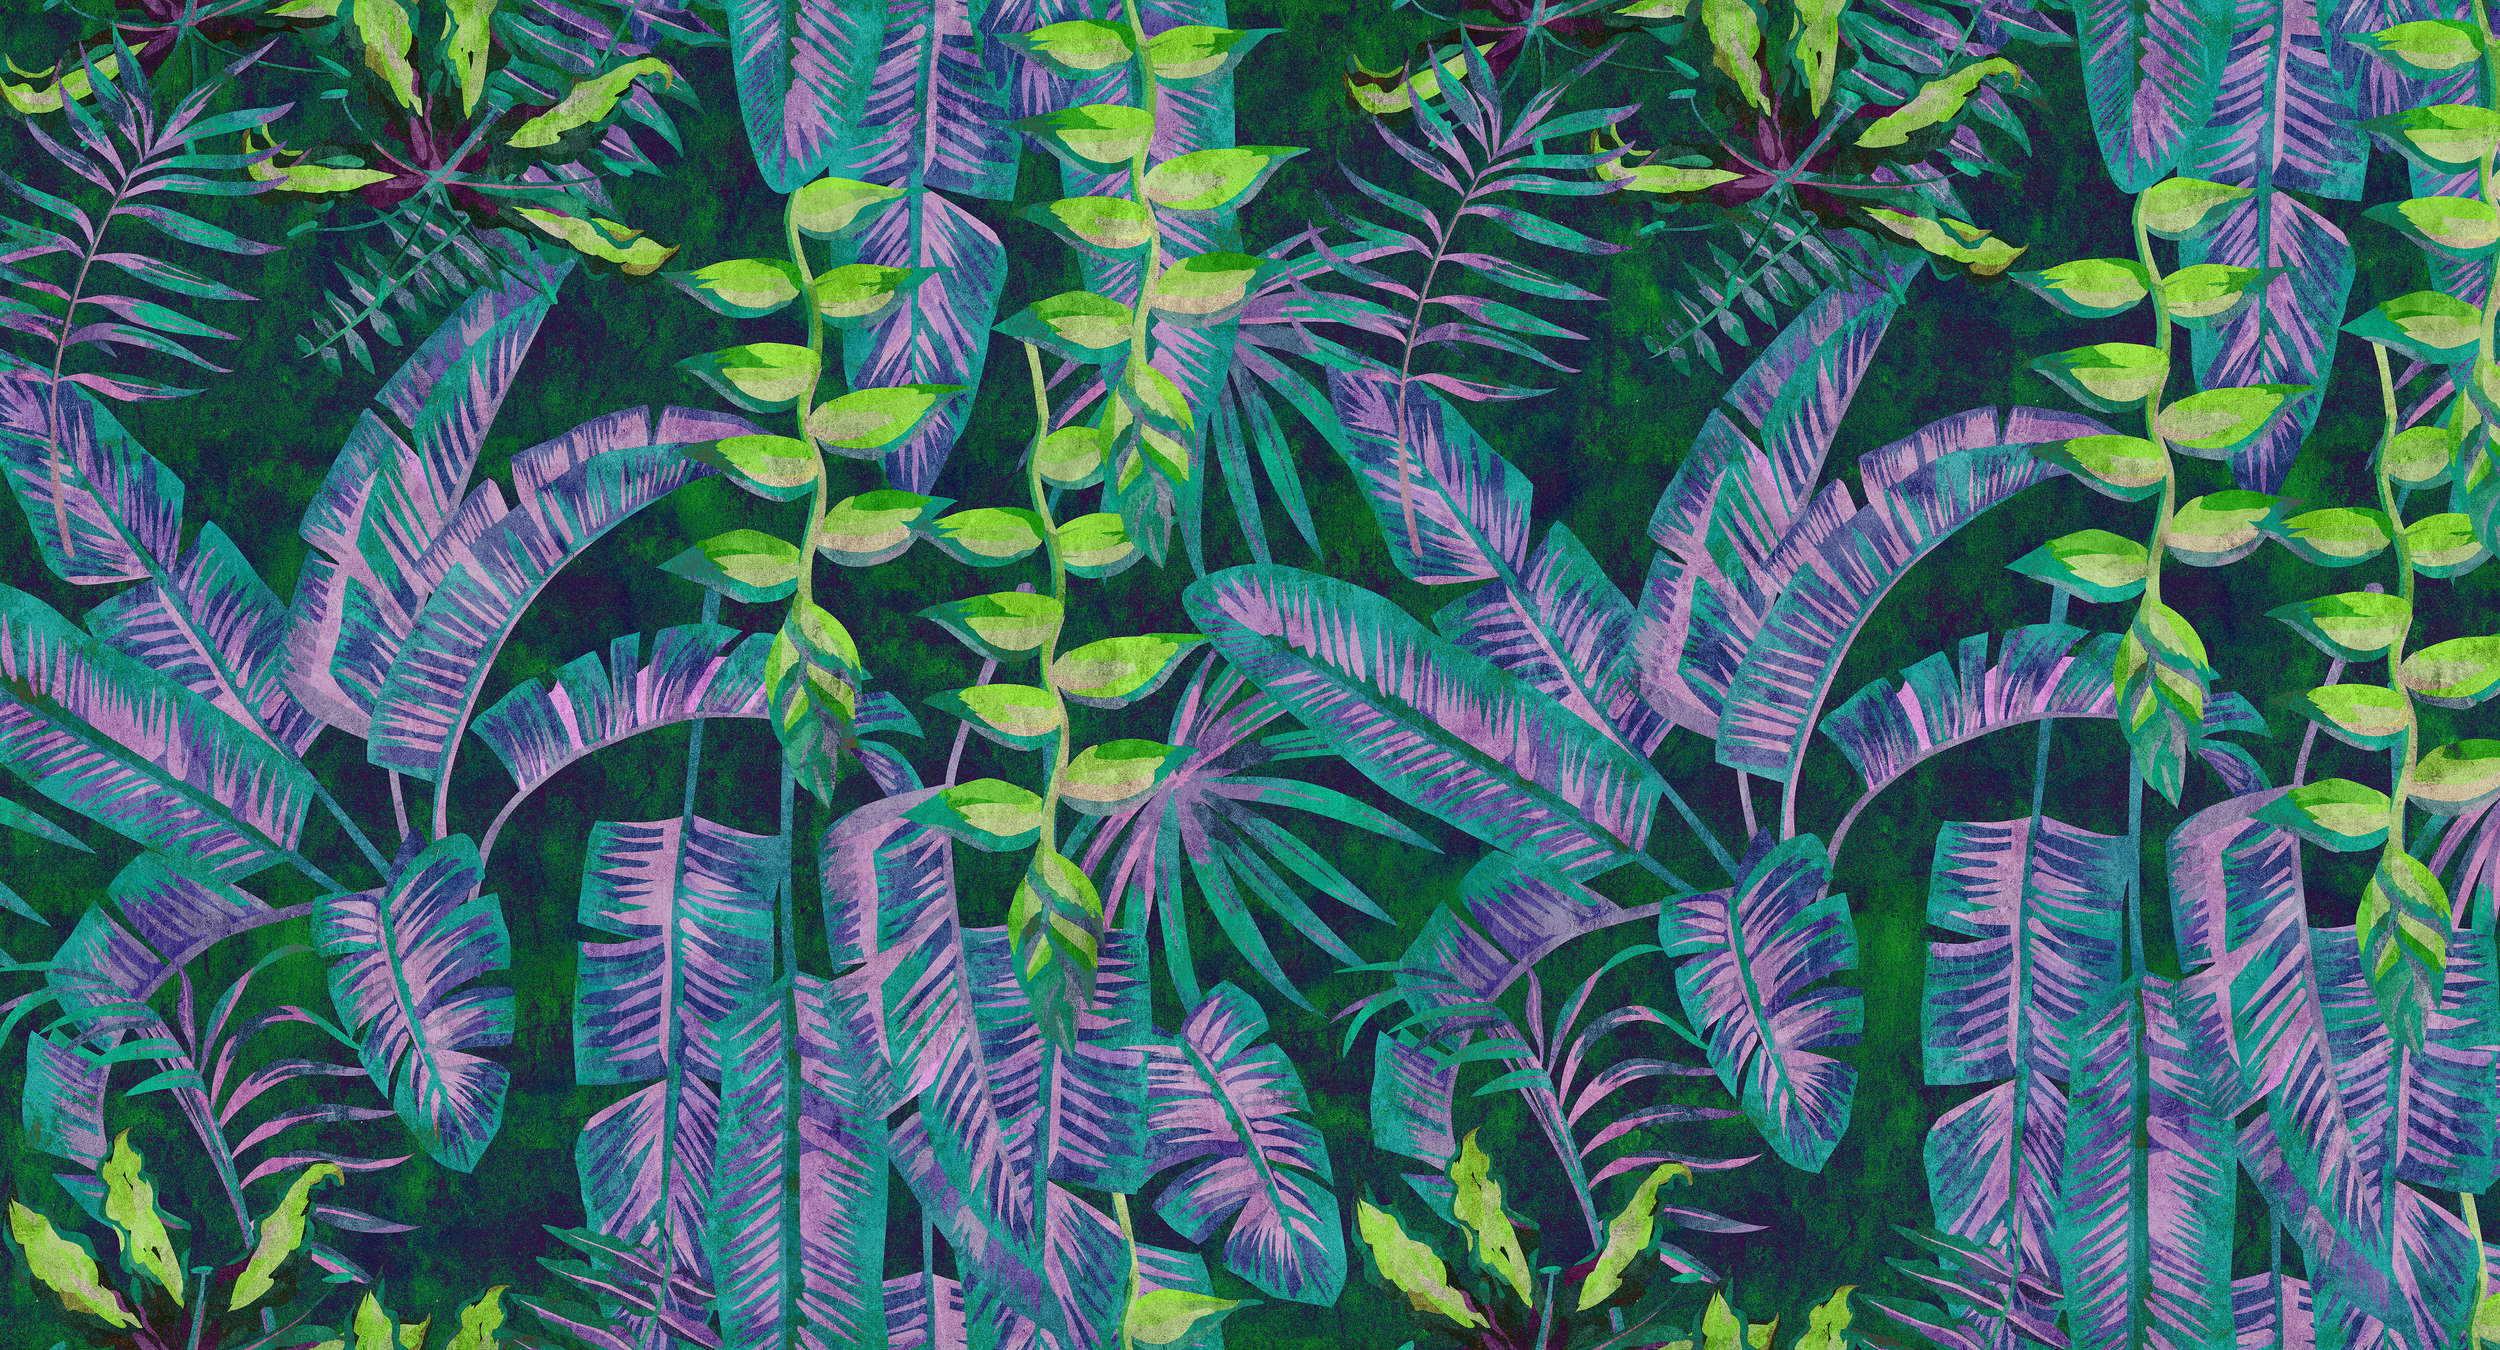             Tropicana 5 - Jungle behang met neonkleuren in vloeipapierstructuur - Blauw, Groen | Parelmoer glad vlies
        